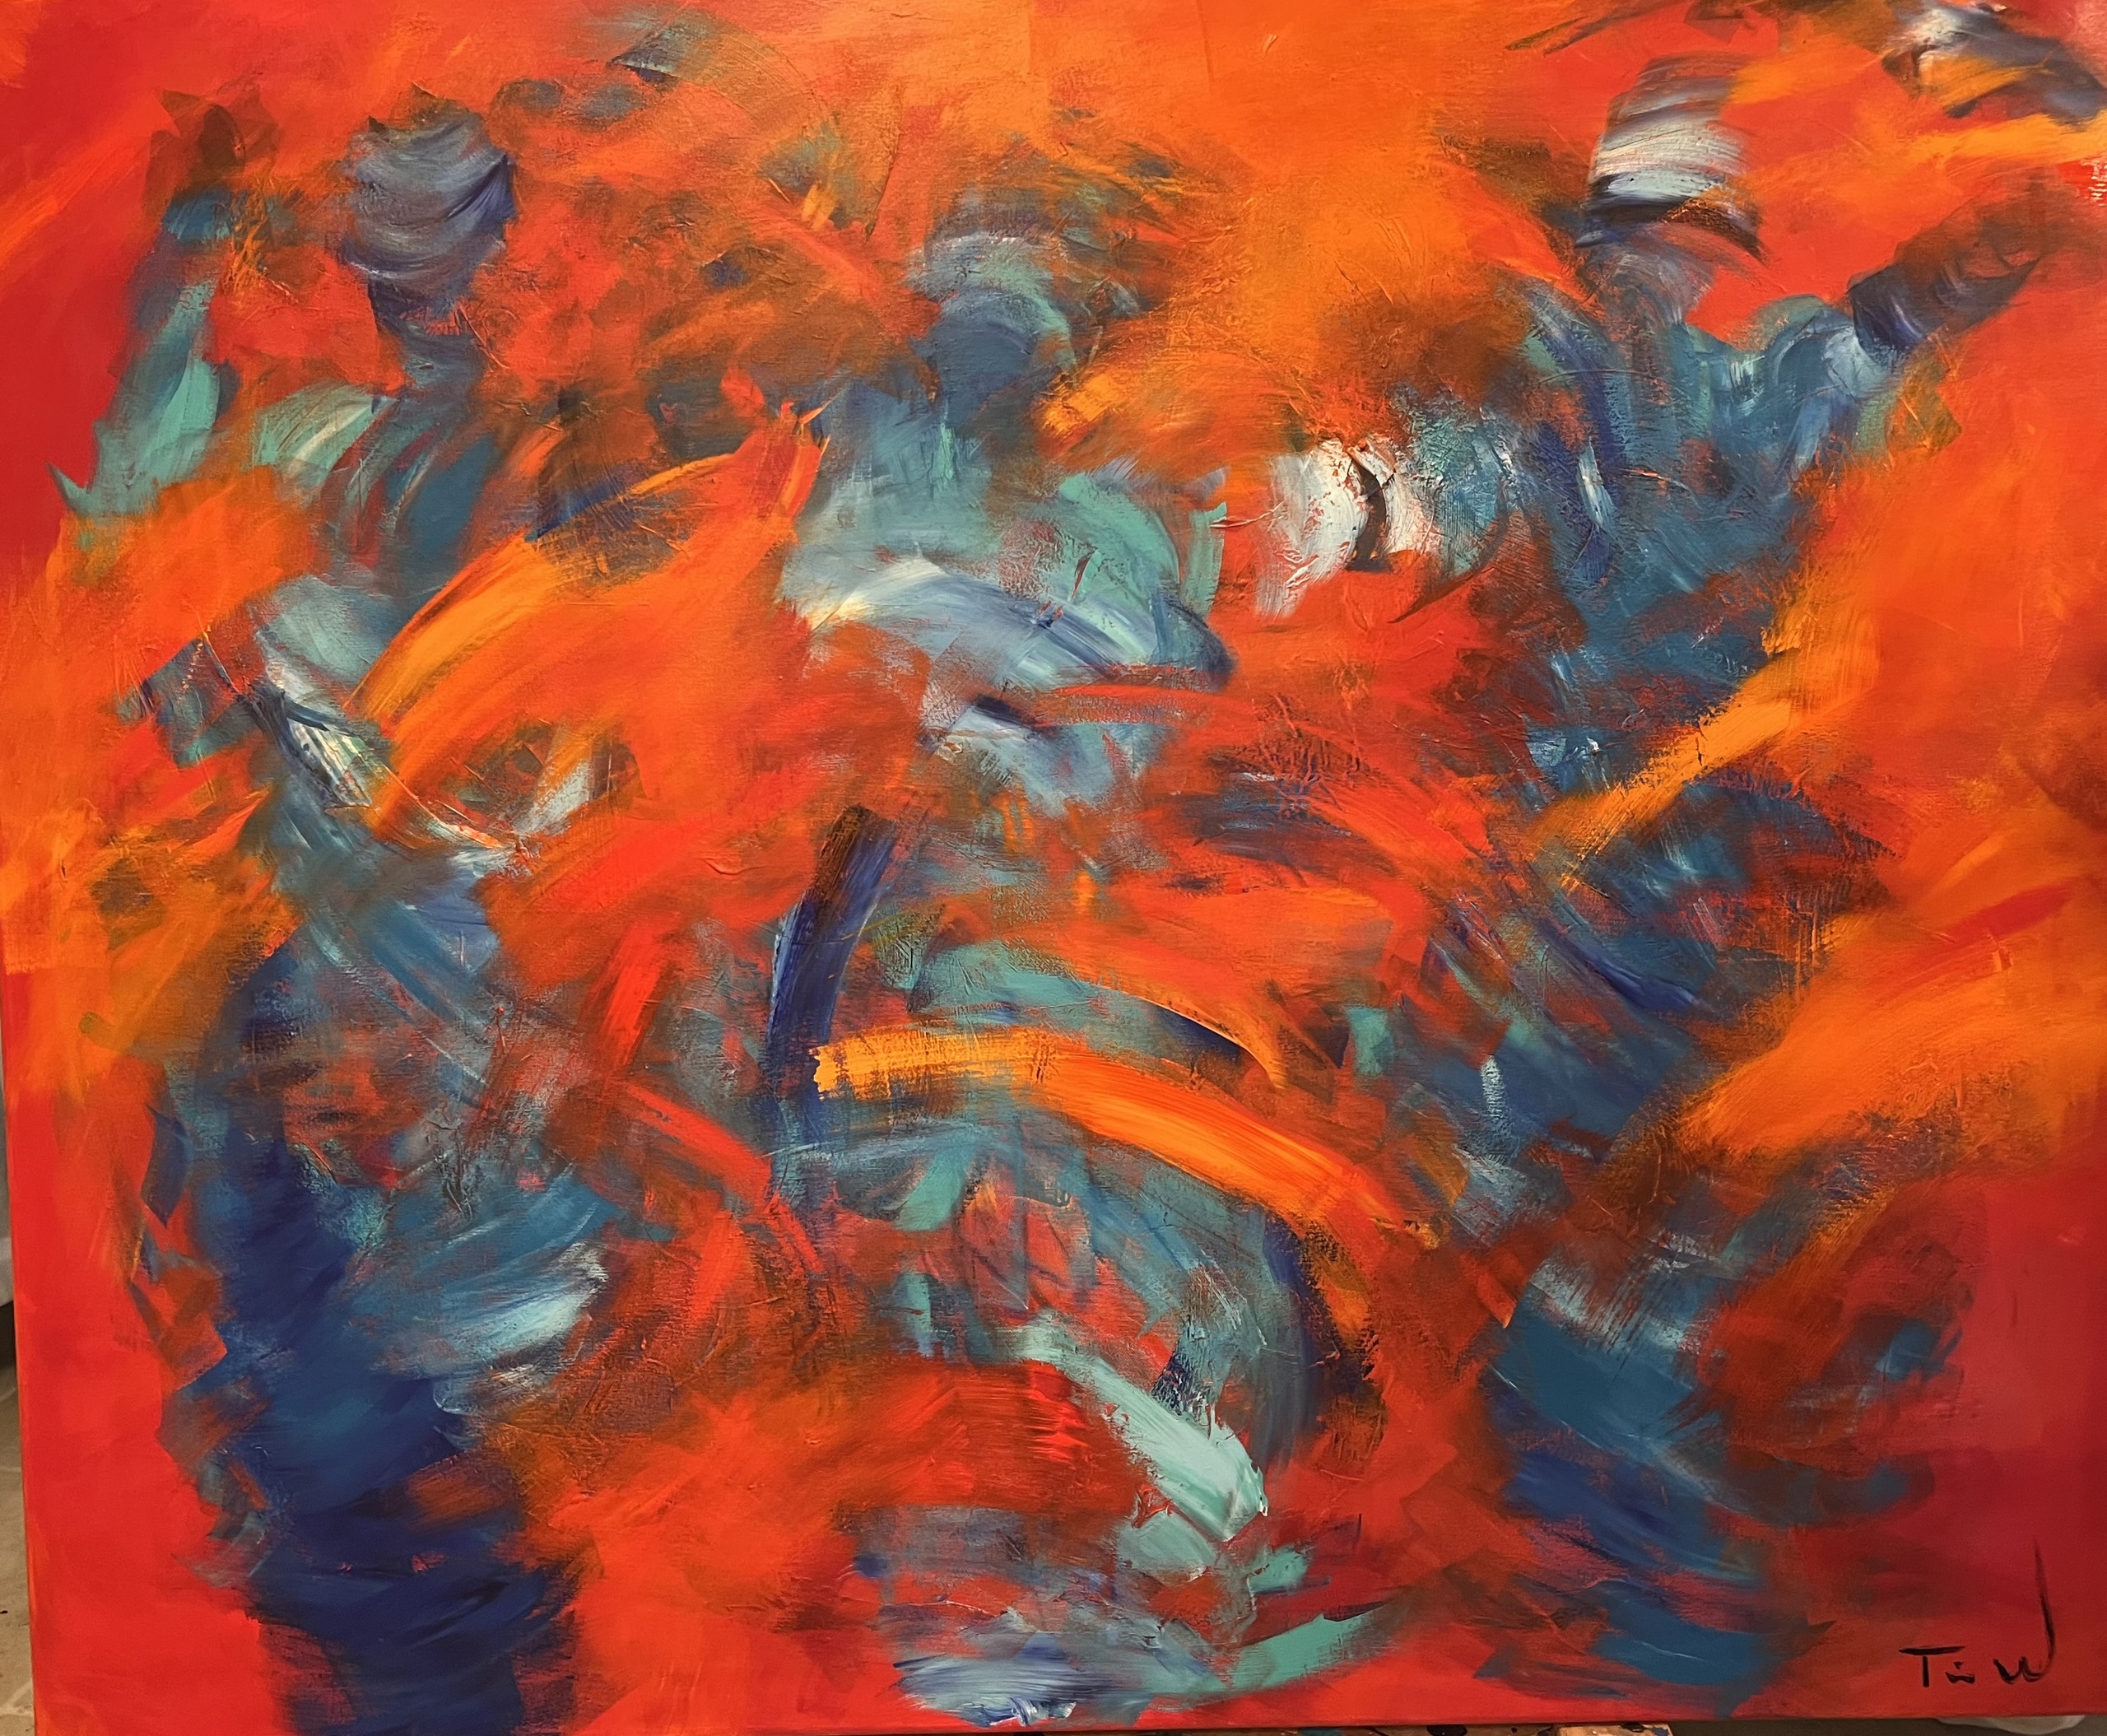 Stort abstrakt maleri med masser af energi i rød, orange, blå og hvid, Måske er det tre gratier, der byder op til dans?